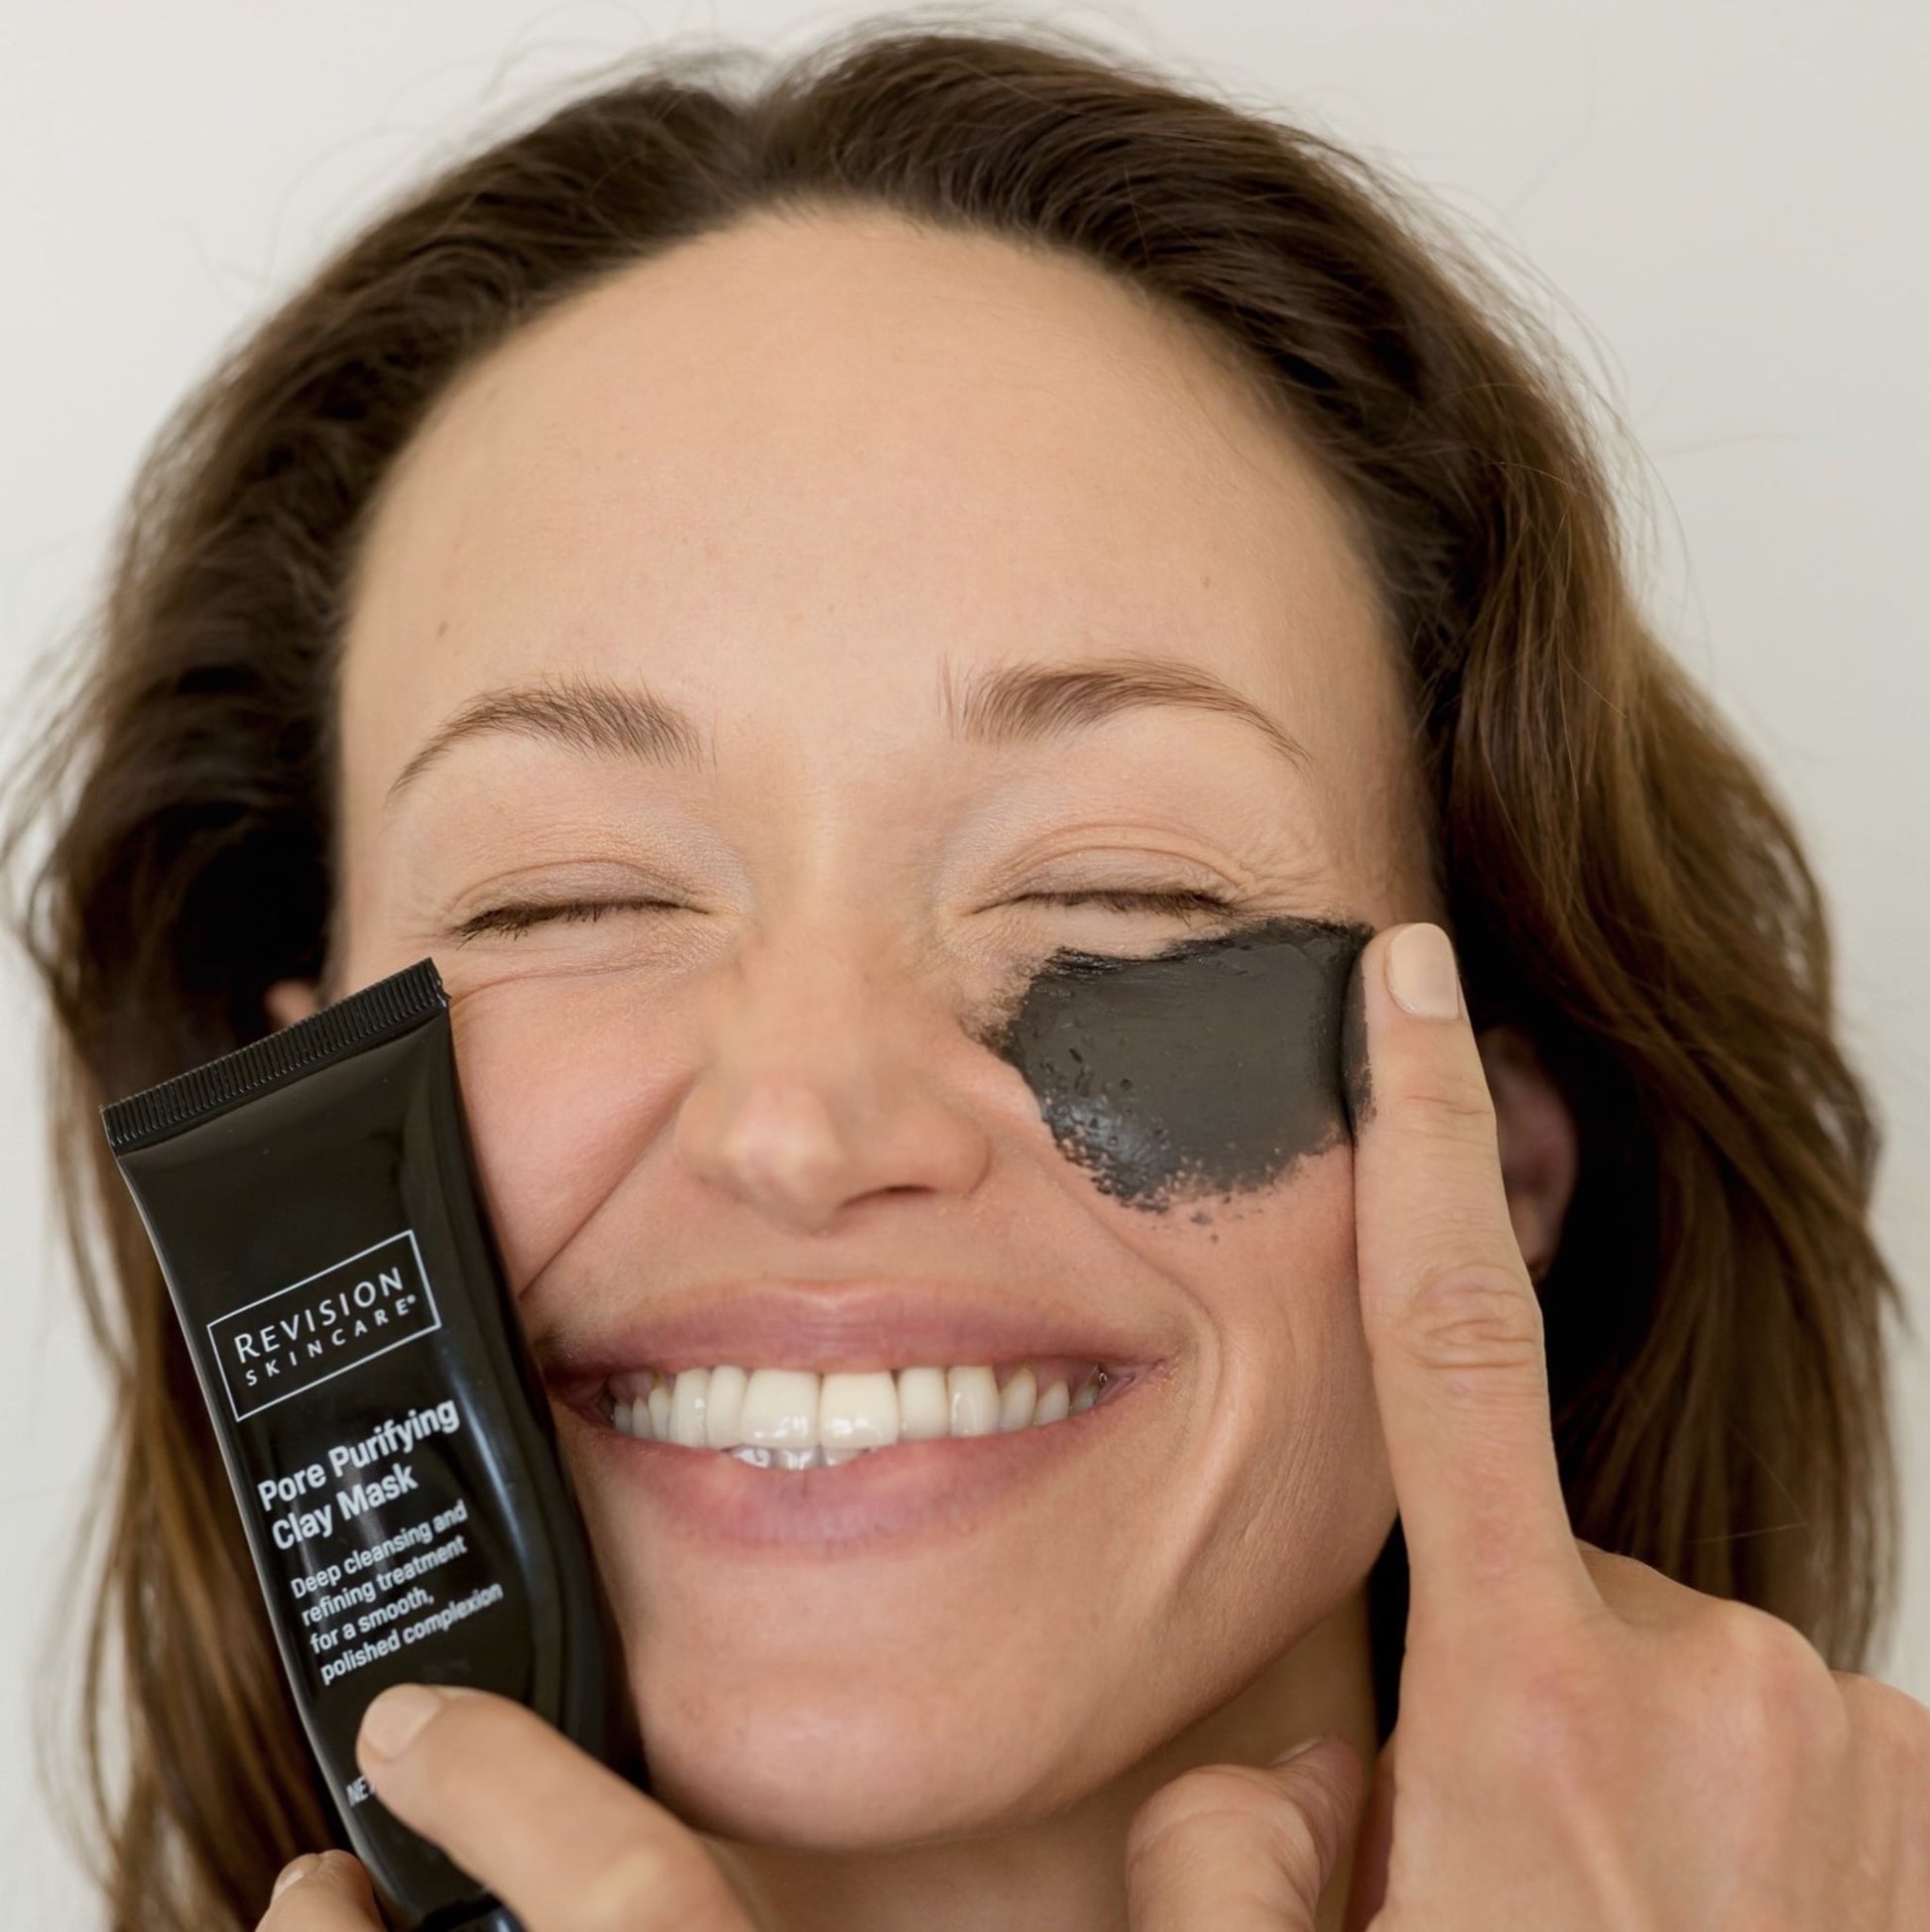 revision-skincare-pore-purifying-clay-mask-acne-dca-advanced-skincare-center